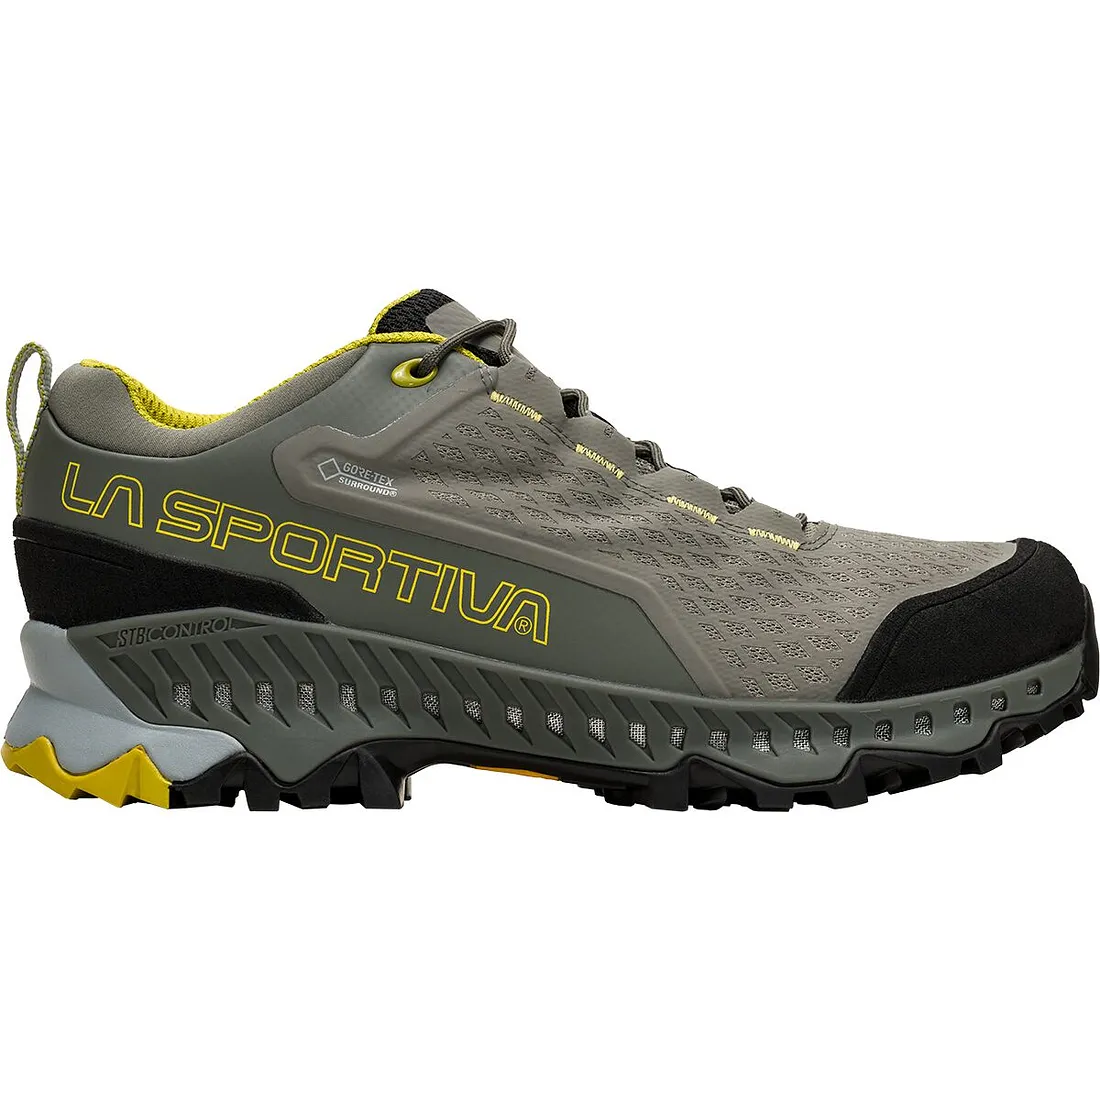 La Sportiva Spire GTX Women's Hiking Shoes